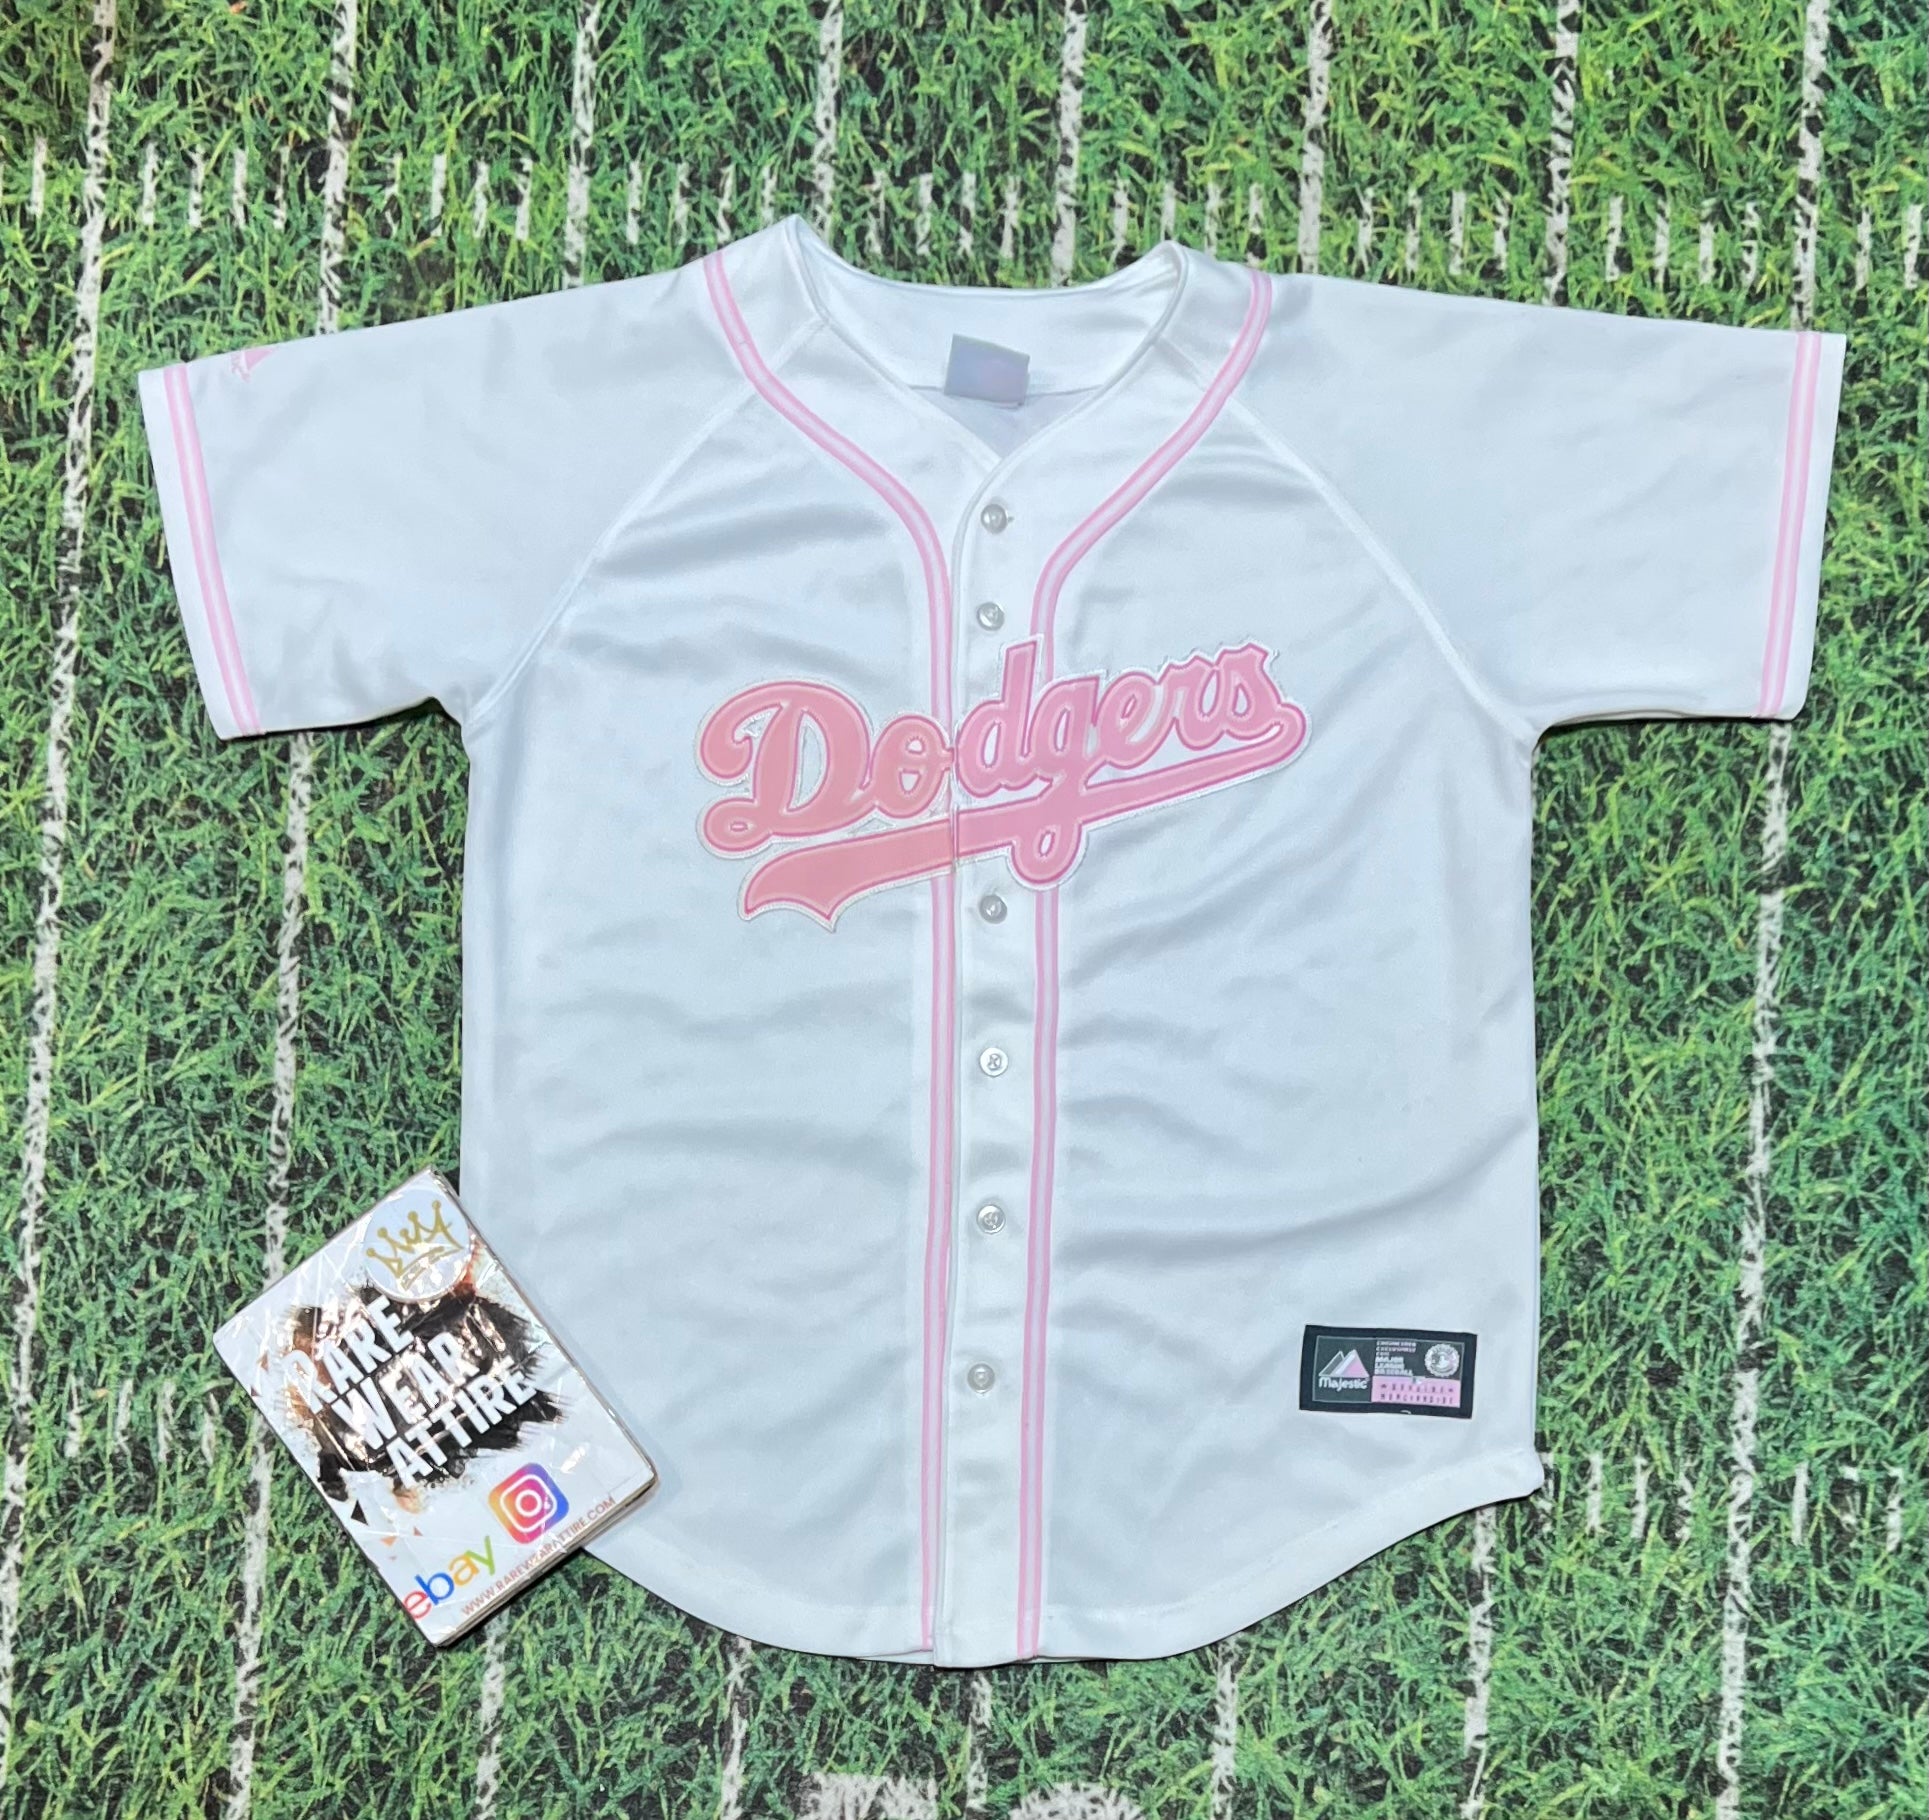 Vintage 90s Jersey Baseball Dodgers 